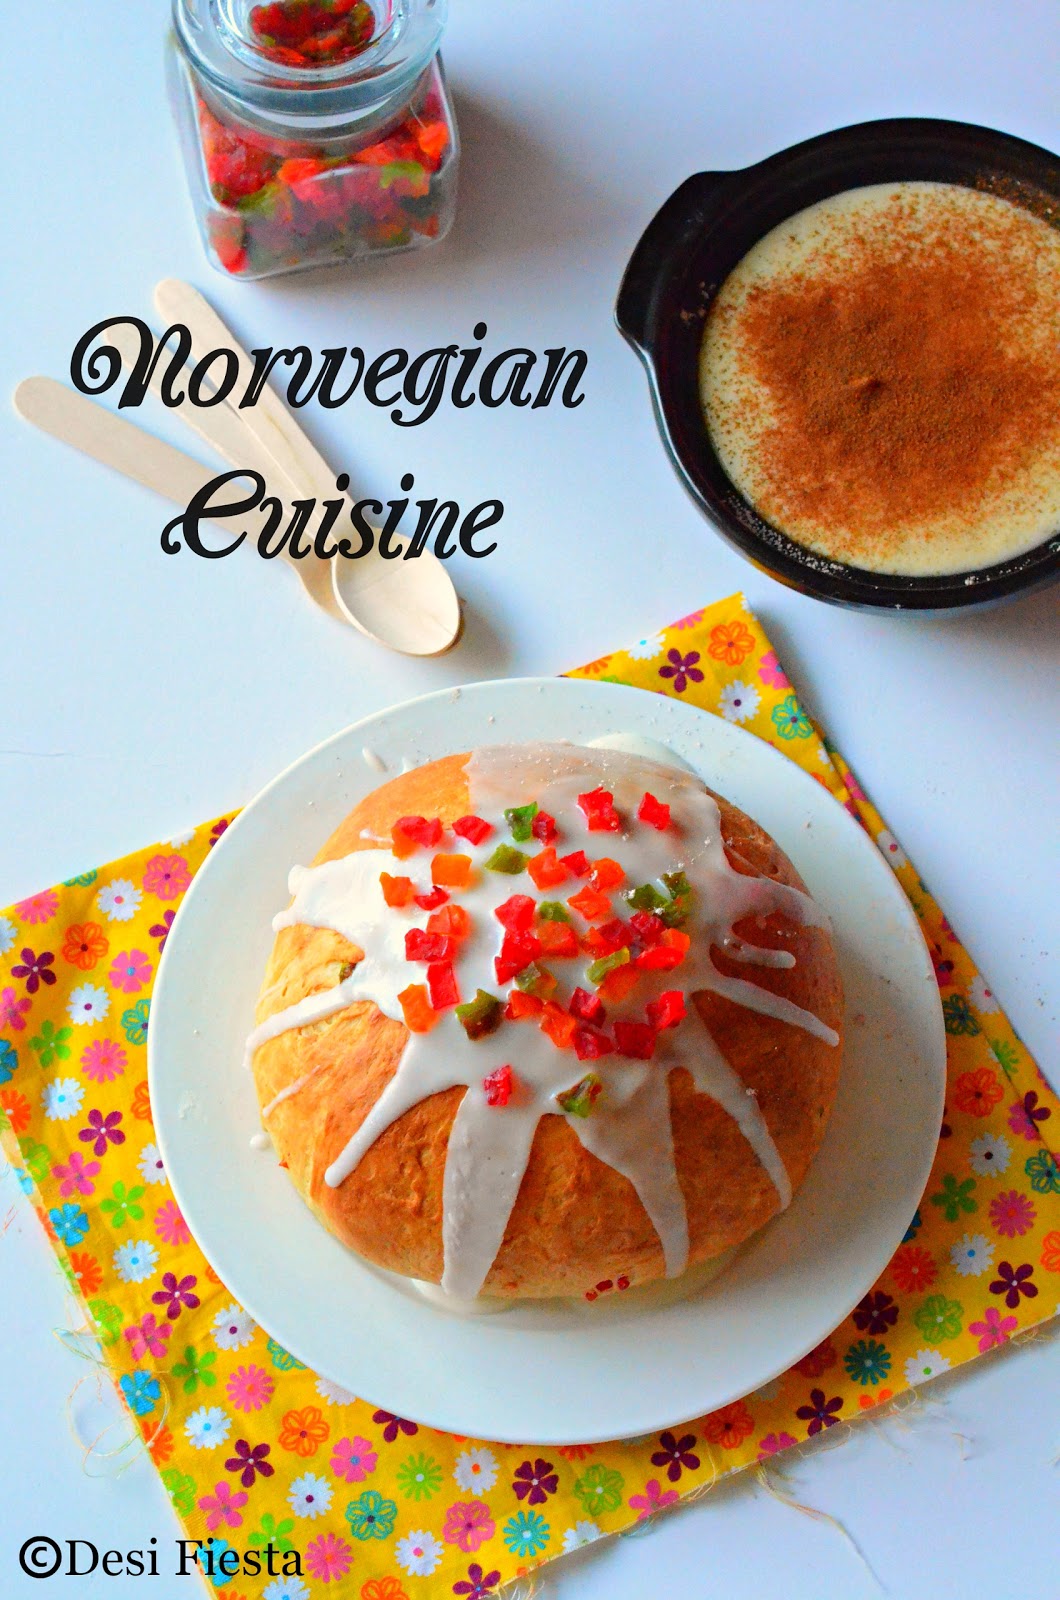 Julekage (Norwegian Christmas Fruit Bread) |Rommegrot (Norwegian Cream ...